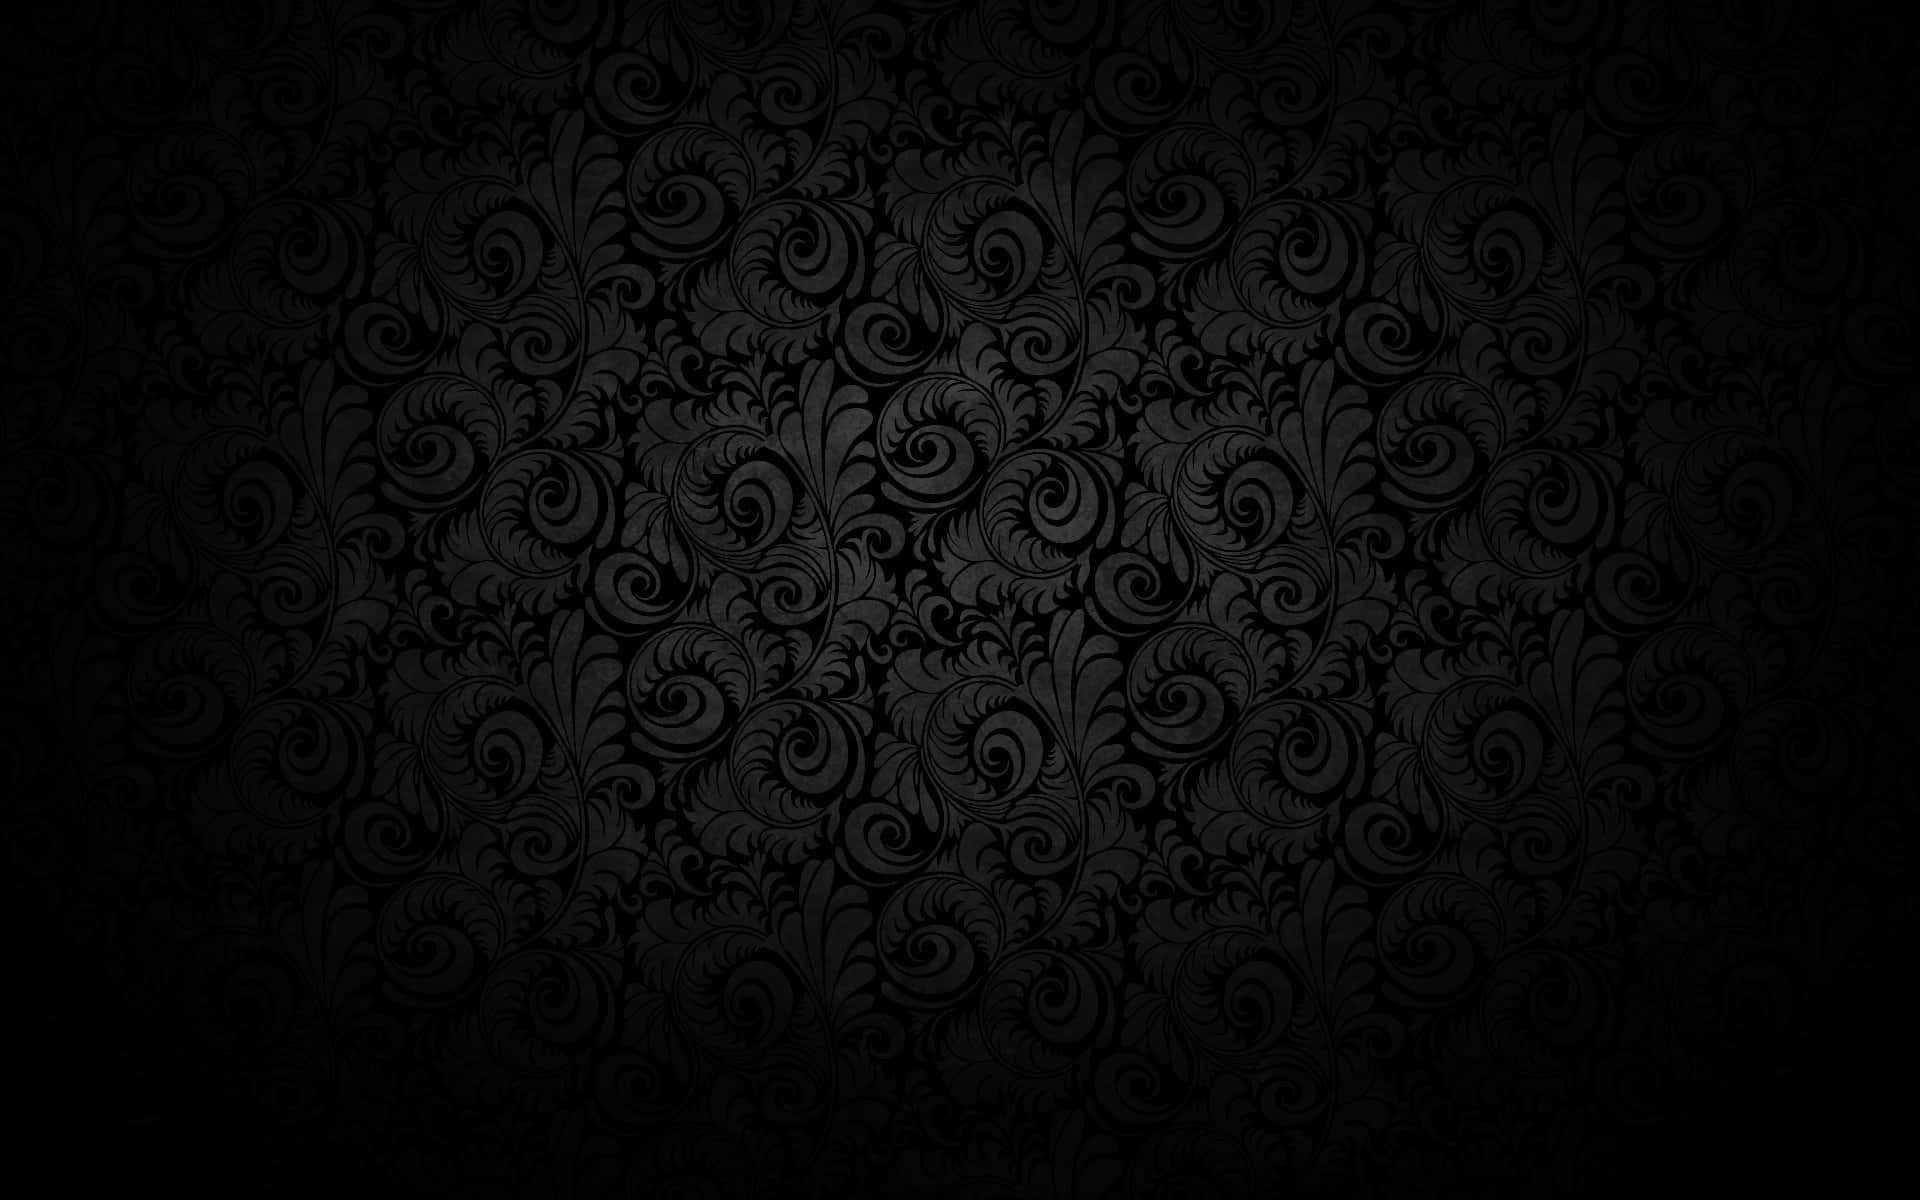 Plain Black Desktop With Swirling Leaves Wallpaper